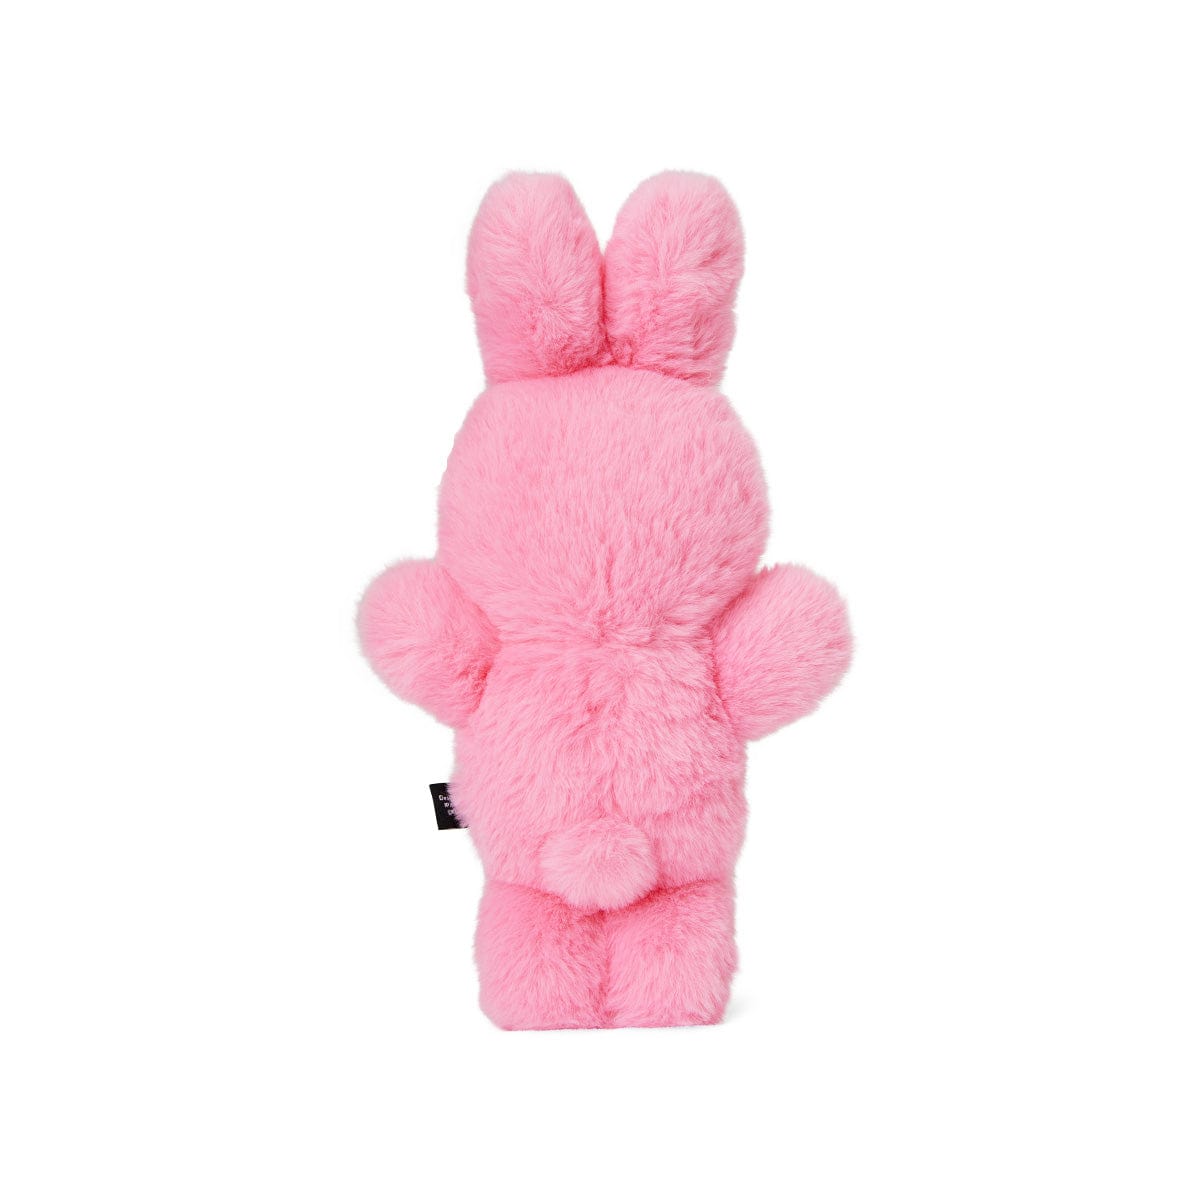 BU WON PLUSH PINK 라인프렌즈 부원 B.B.Rabbit 핑크 인형